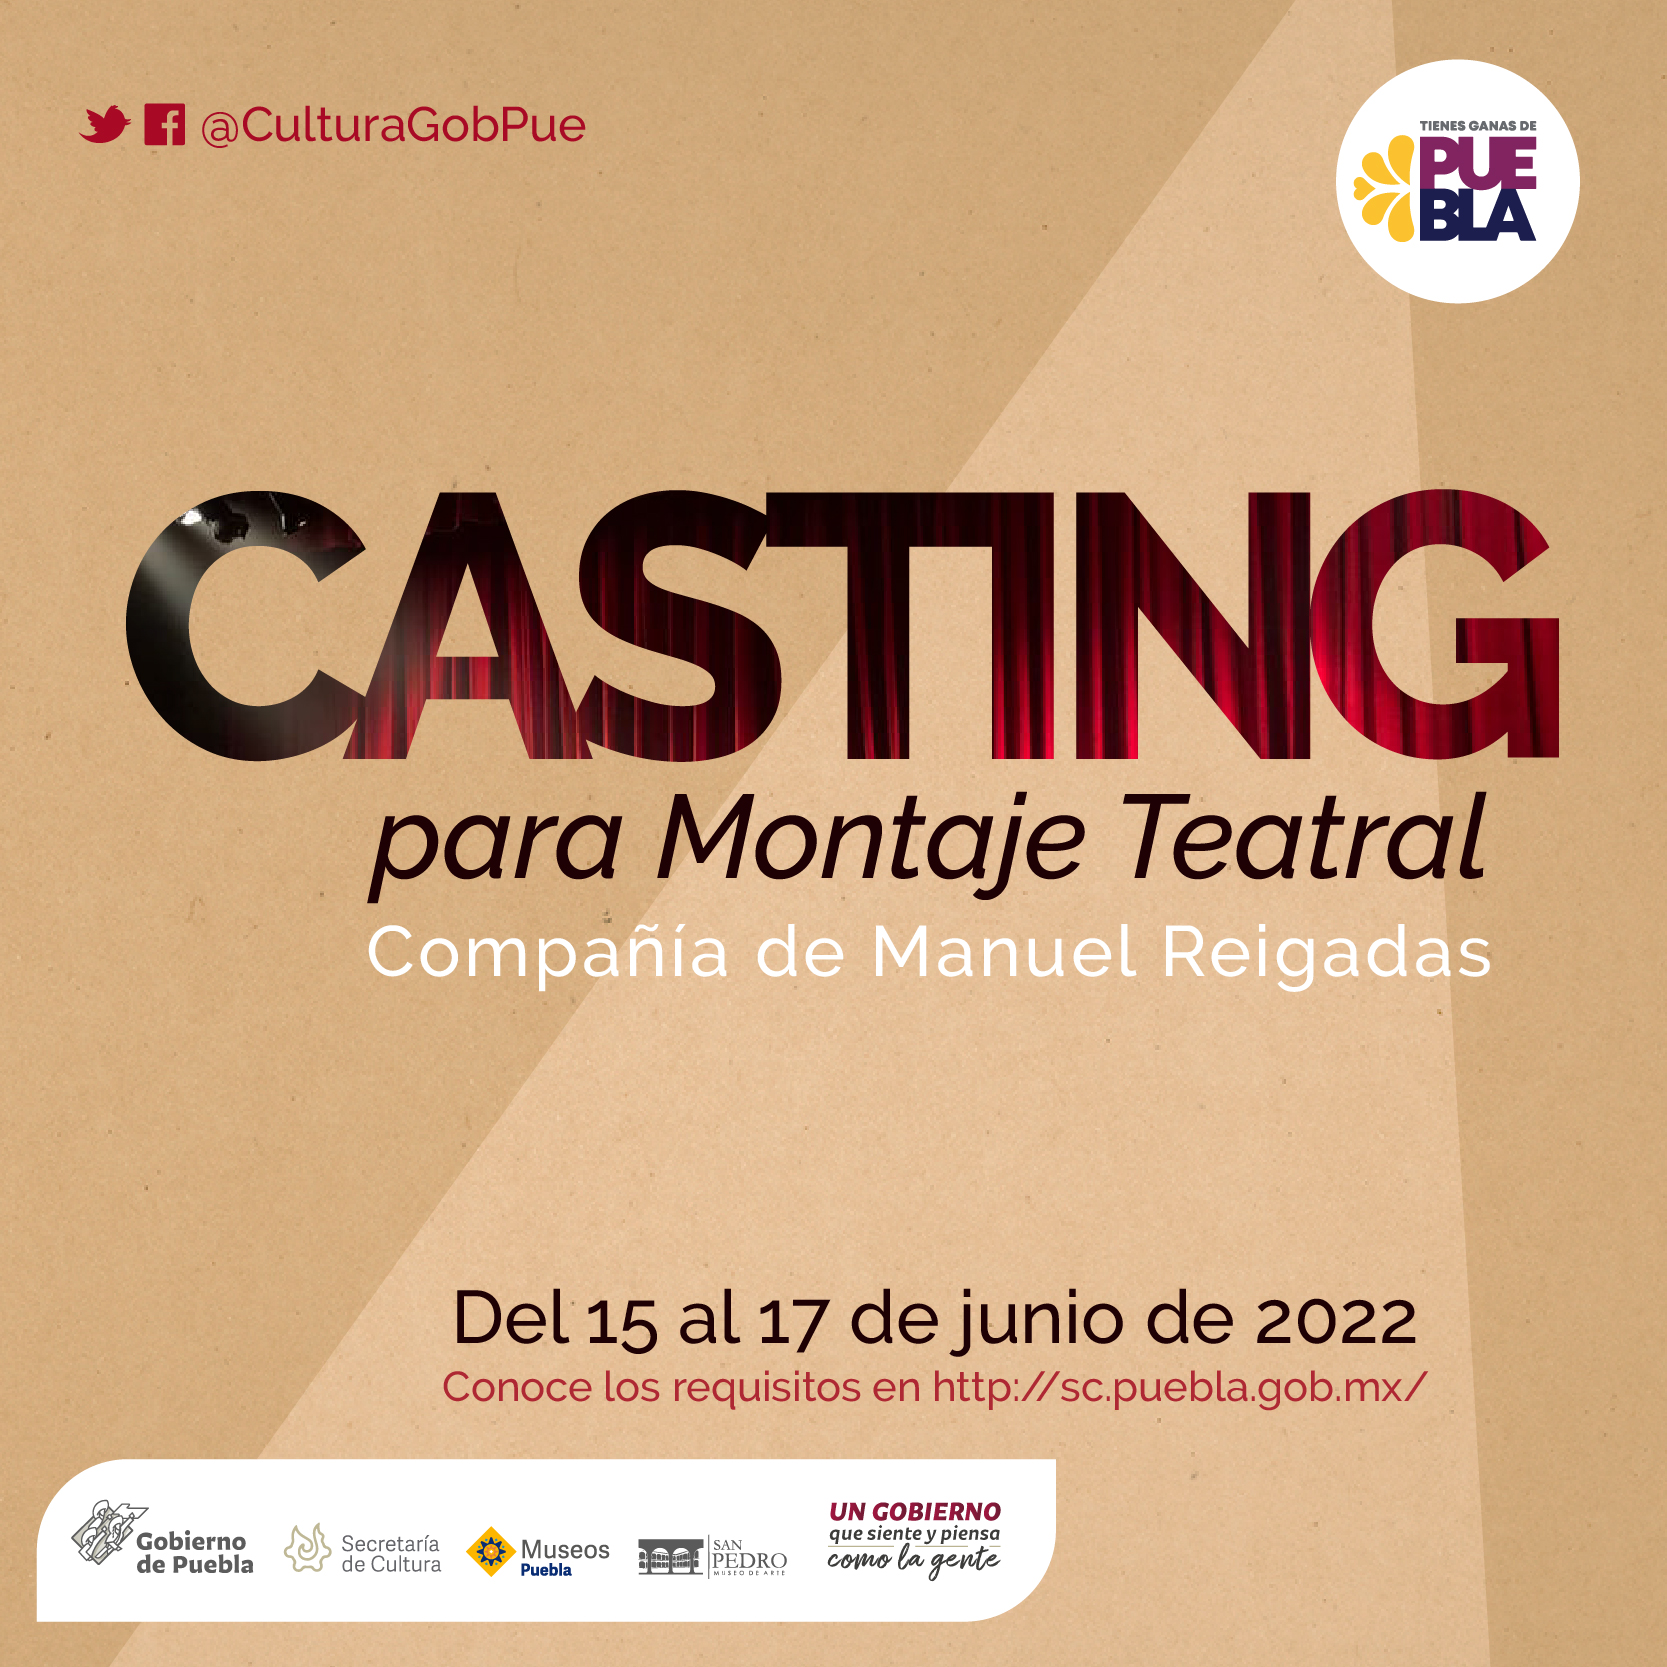 Invitan Cultura y compañía “Manuel Reigadas” a “Casting para Montaje Teatral”